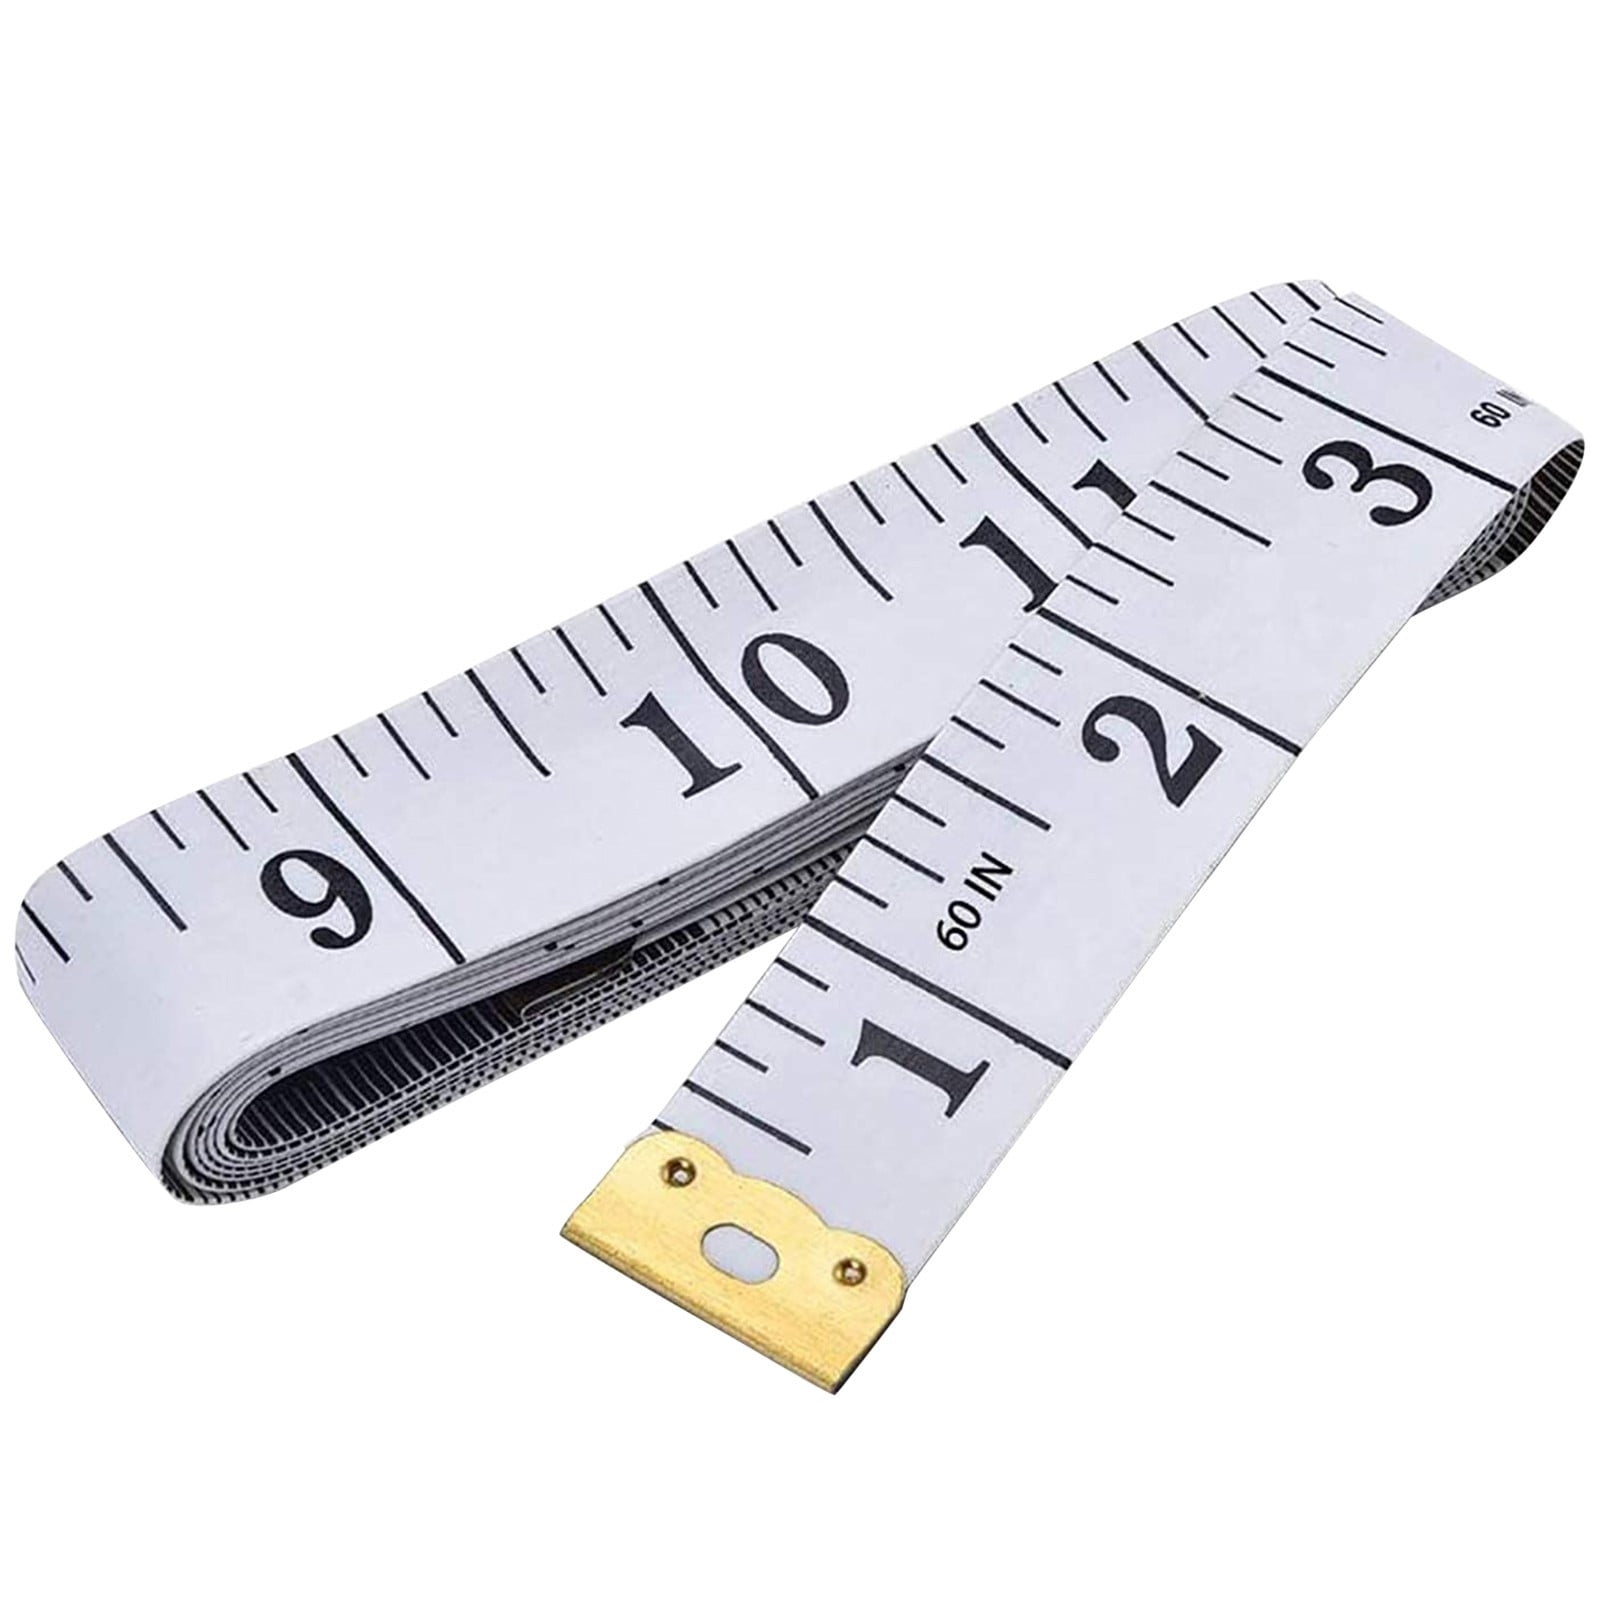 wozhidaoke office supplies soft tape measure double scale body